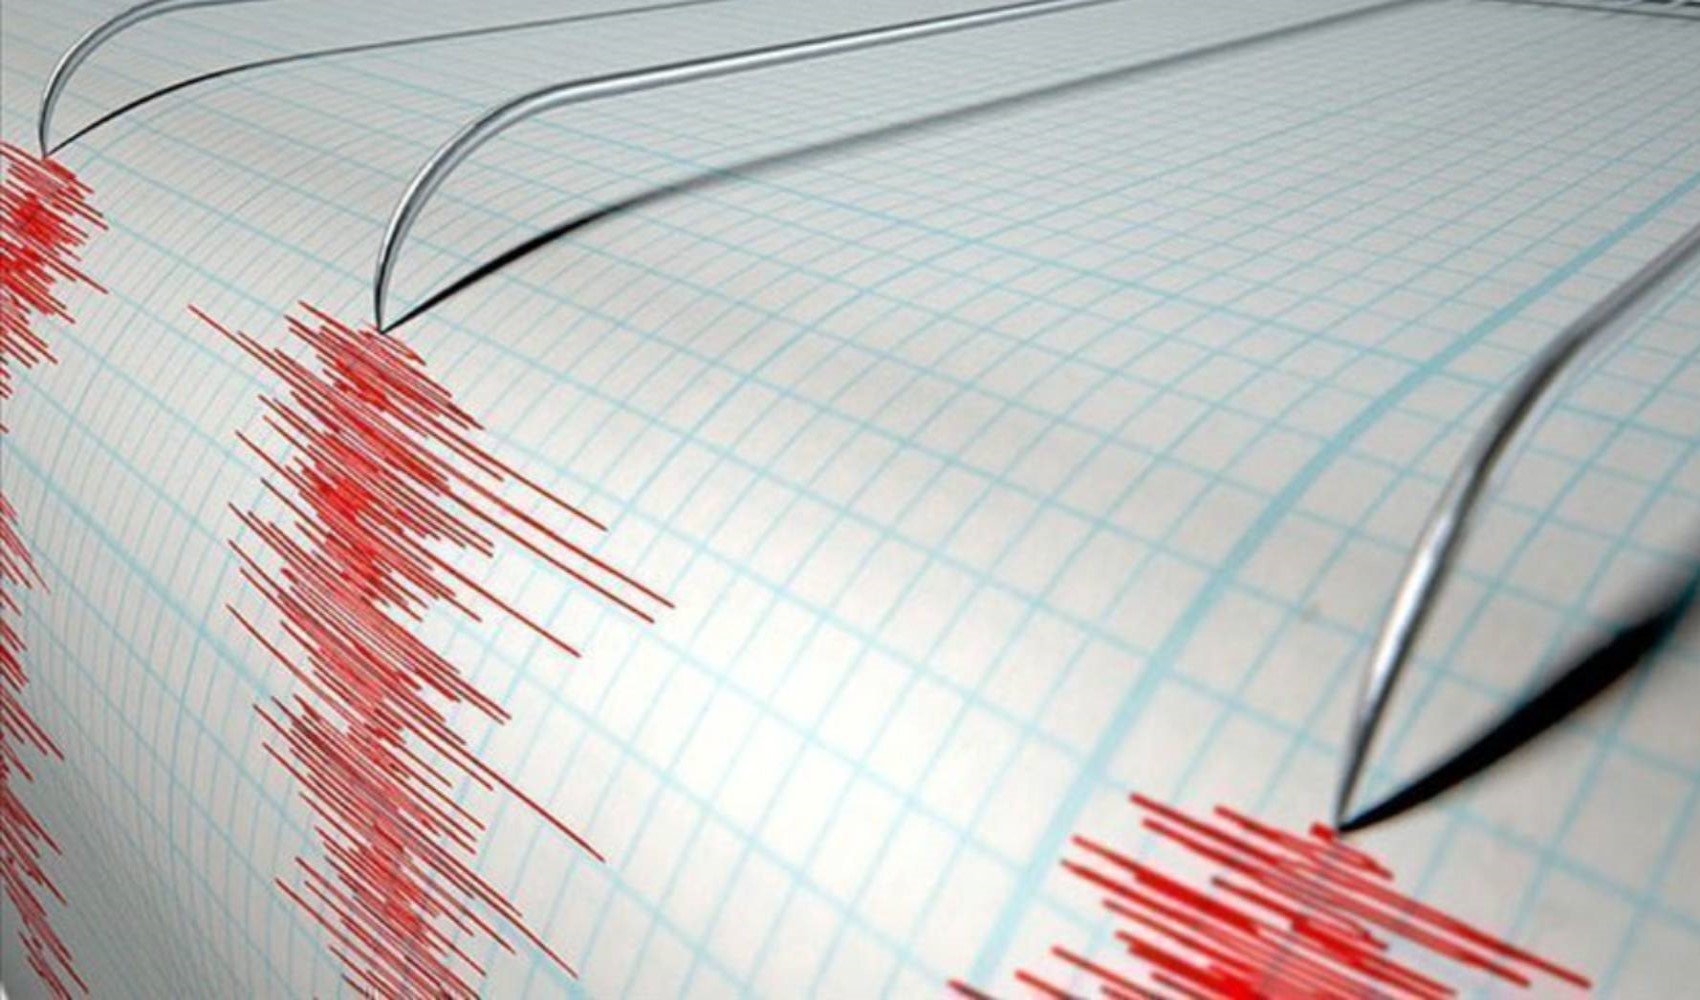 Kahramanmaraş'ın Göksun ilçesinde 3.9 büyüklüğünde deprem